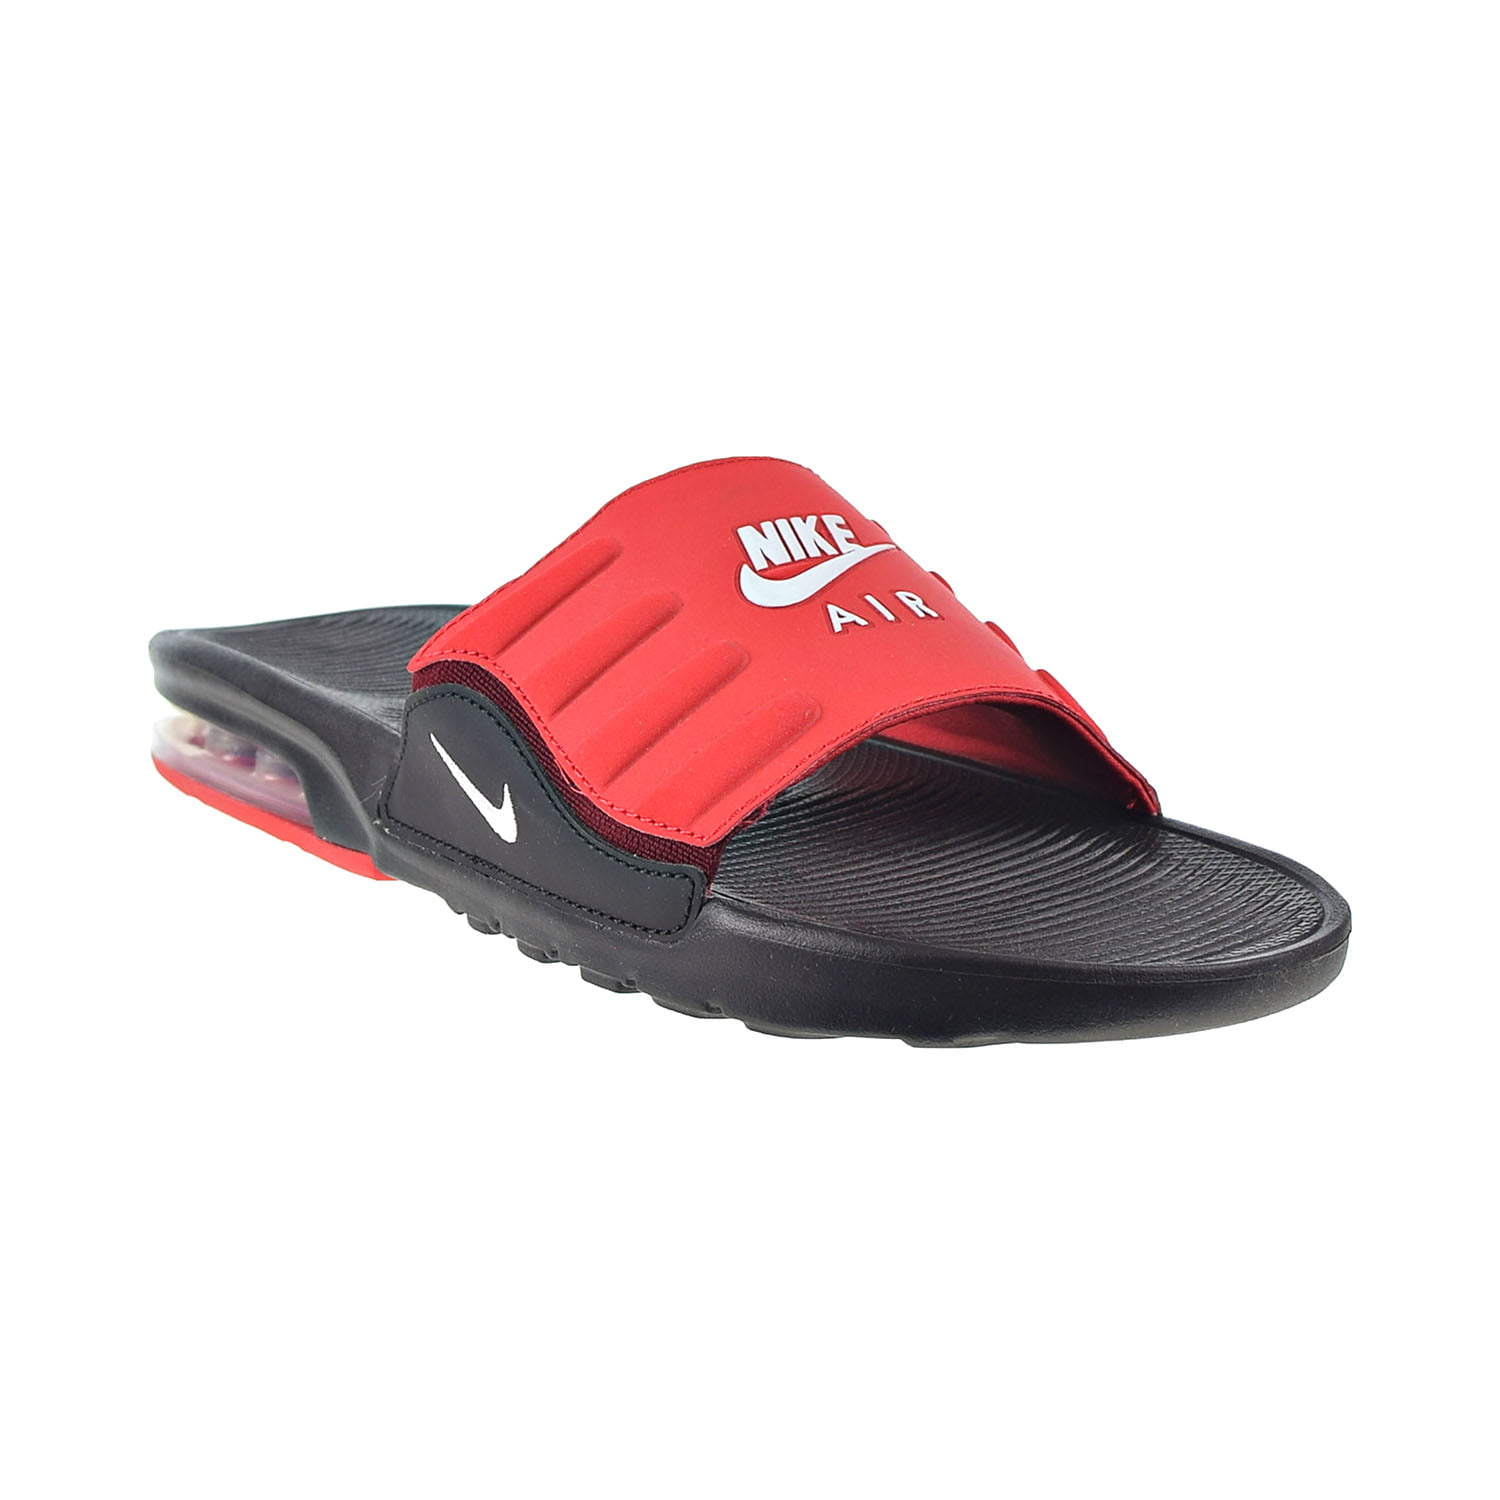 Nike Air Max Camden Slide Black/White/University Red/Team Red